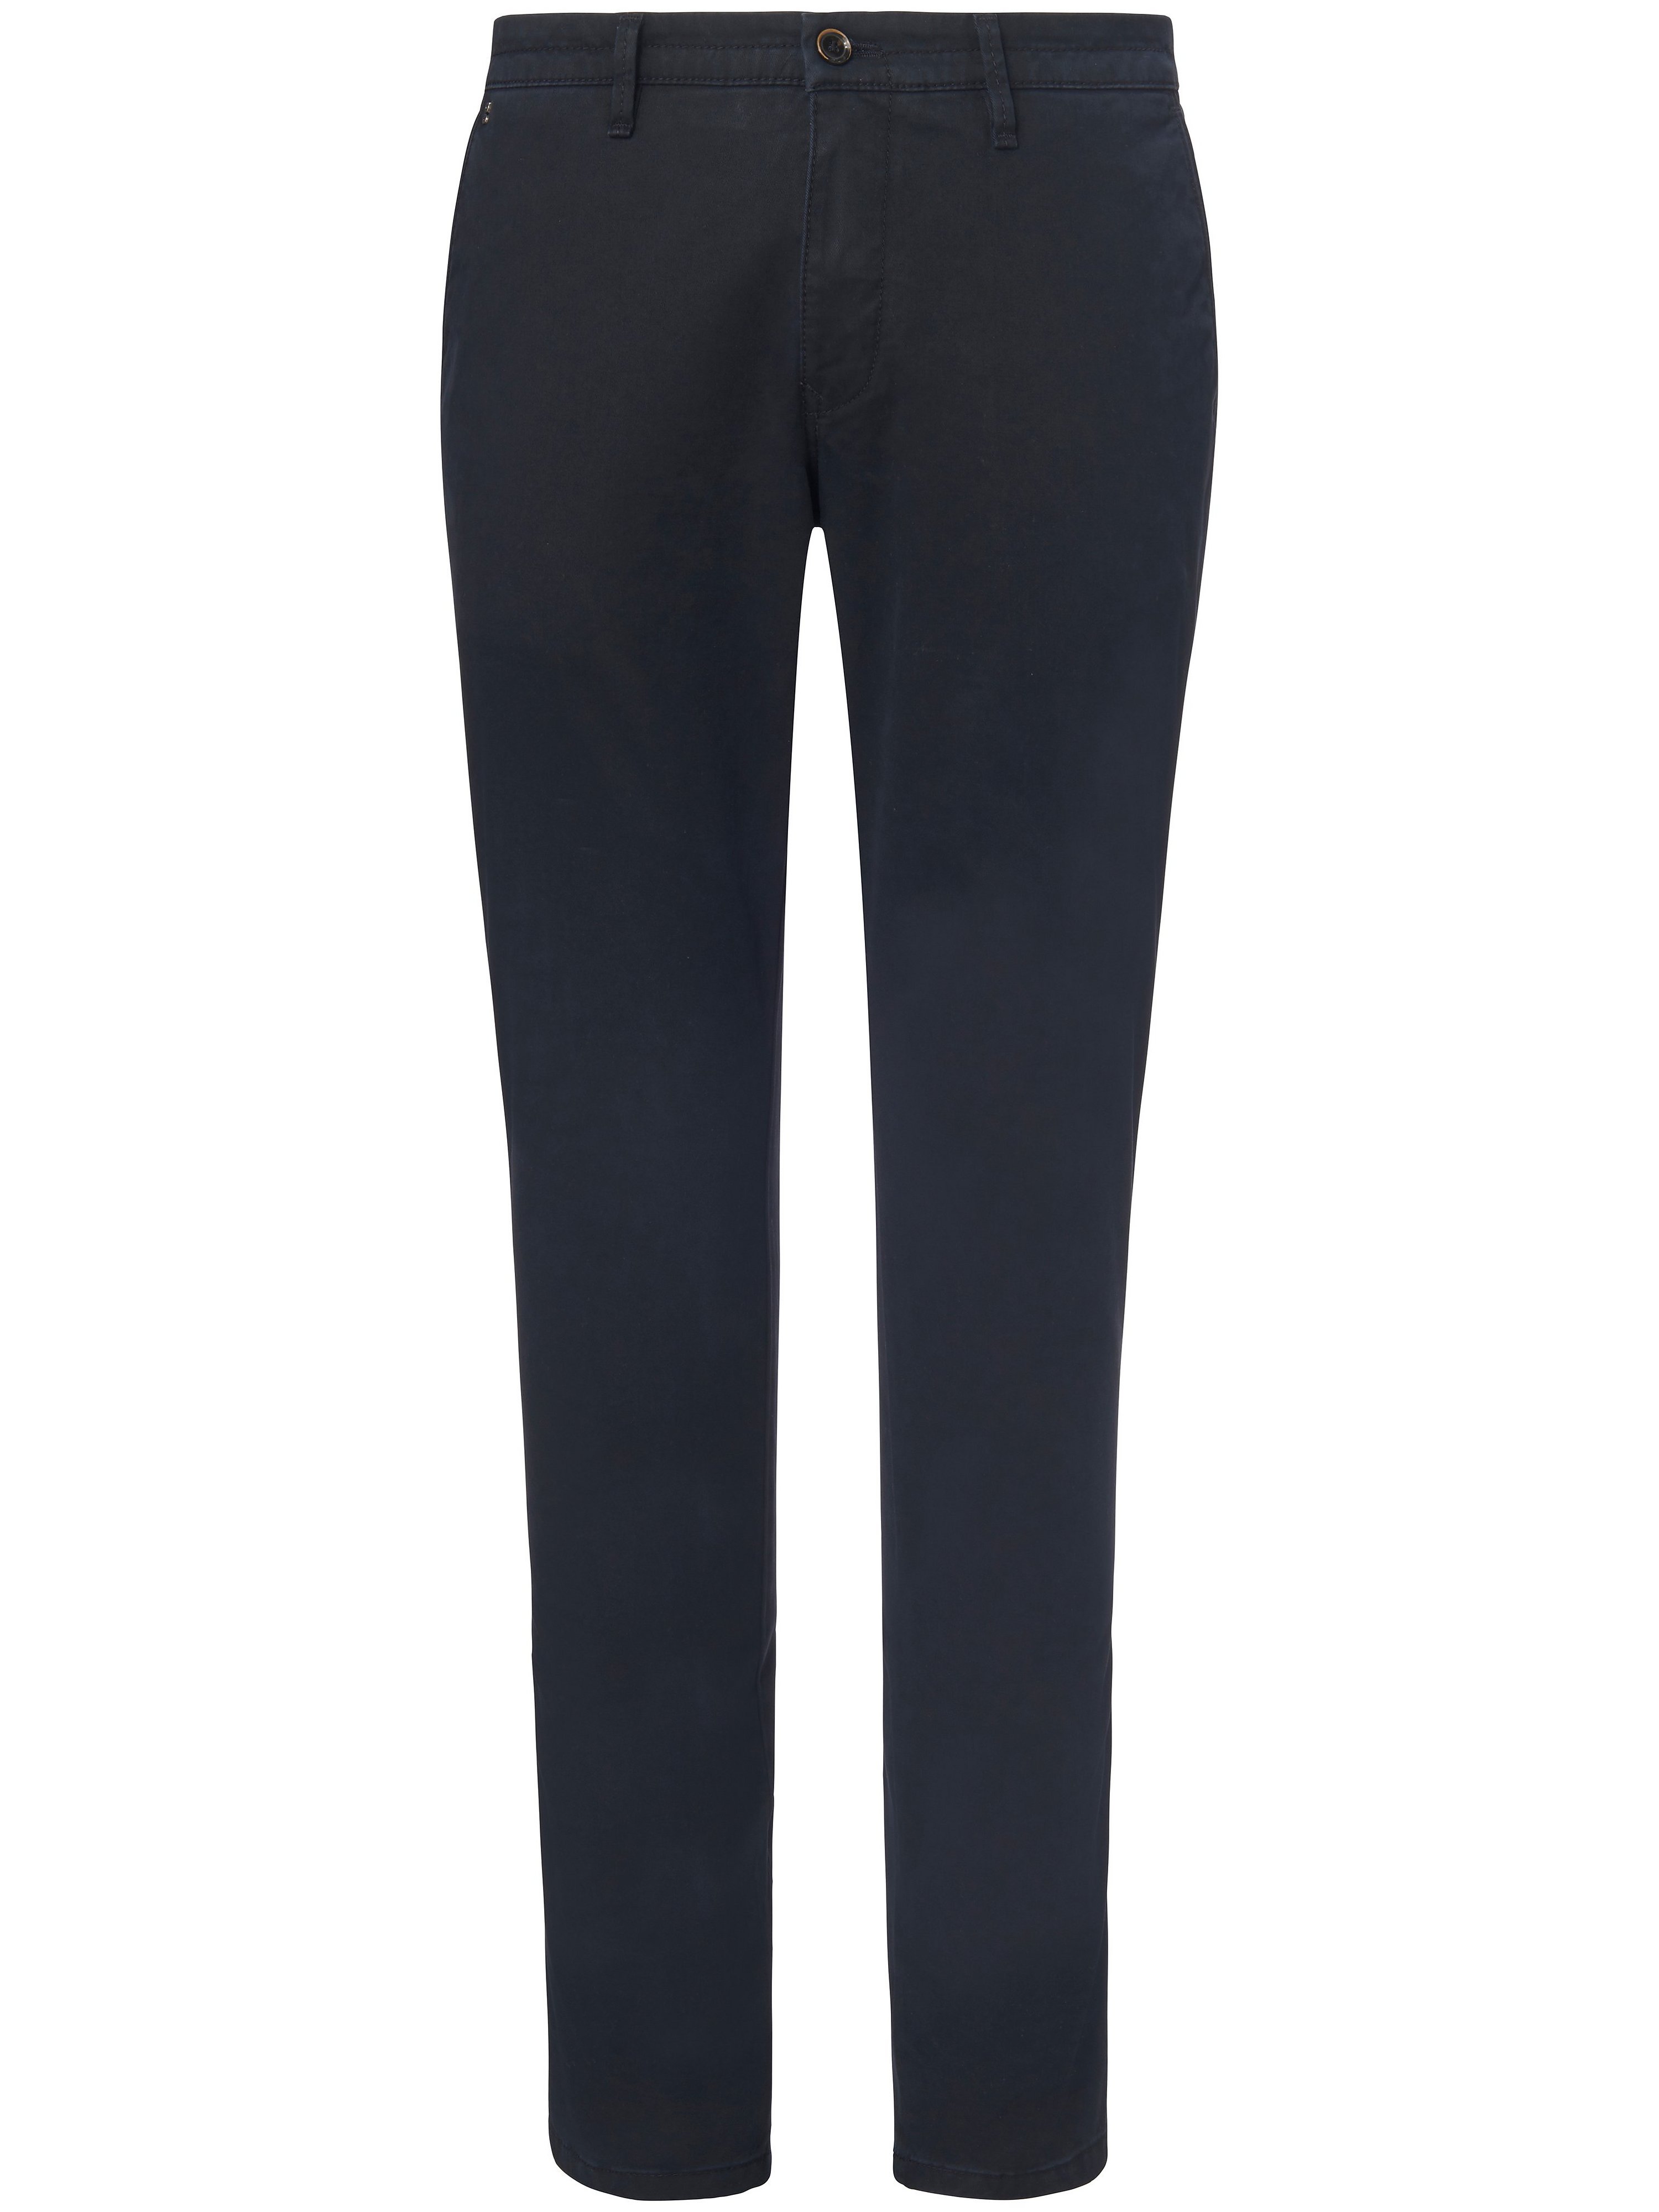 Le pantalon coupe Slim Fit modèle Sterling  gardeur bleu taille 28